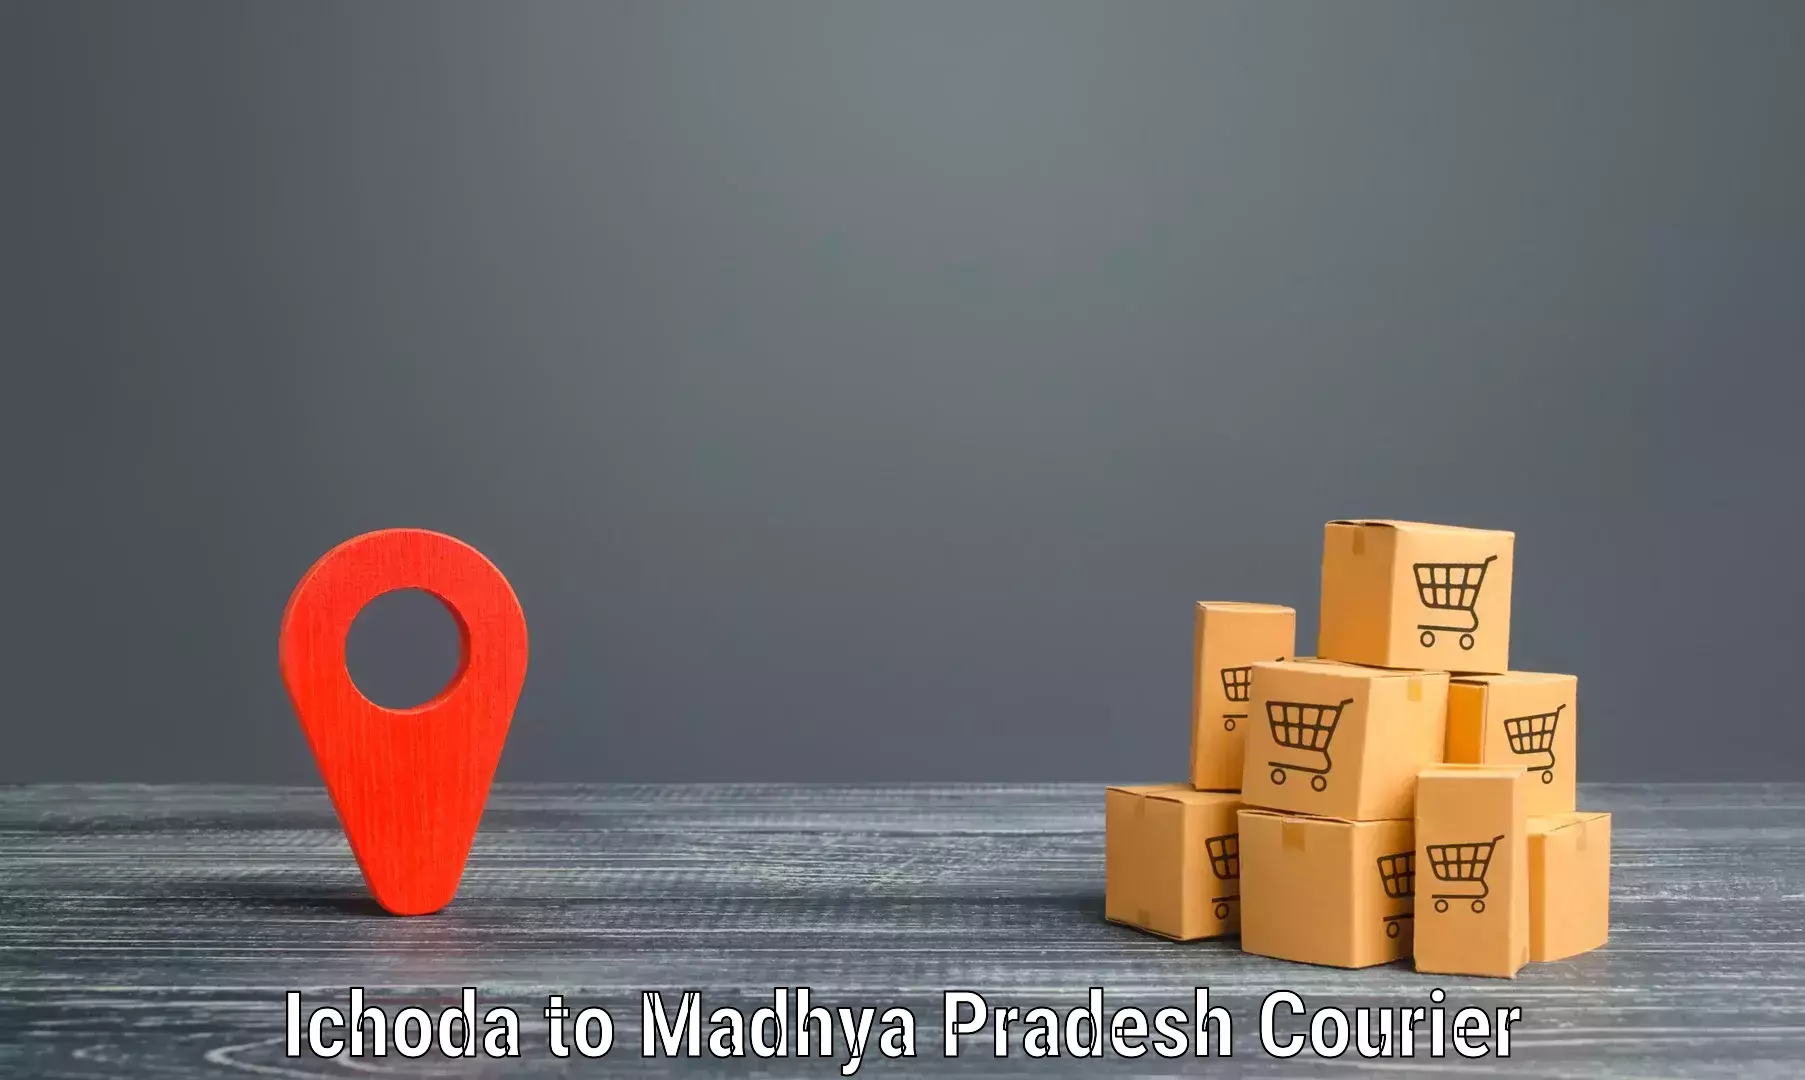 Express mail service Ichoda to Madhya Pradesh